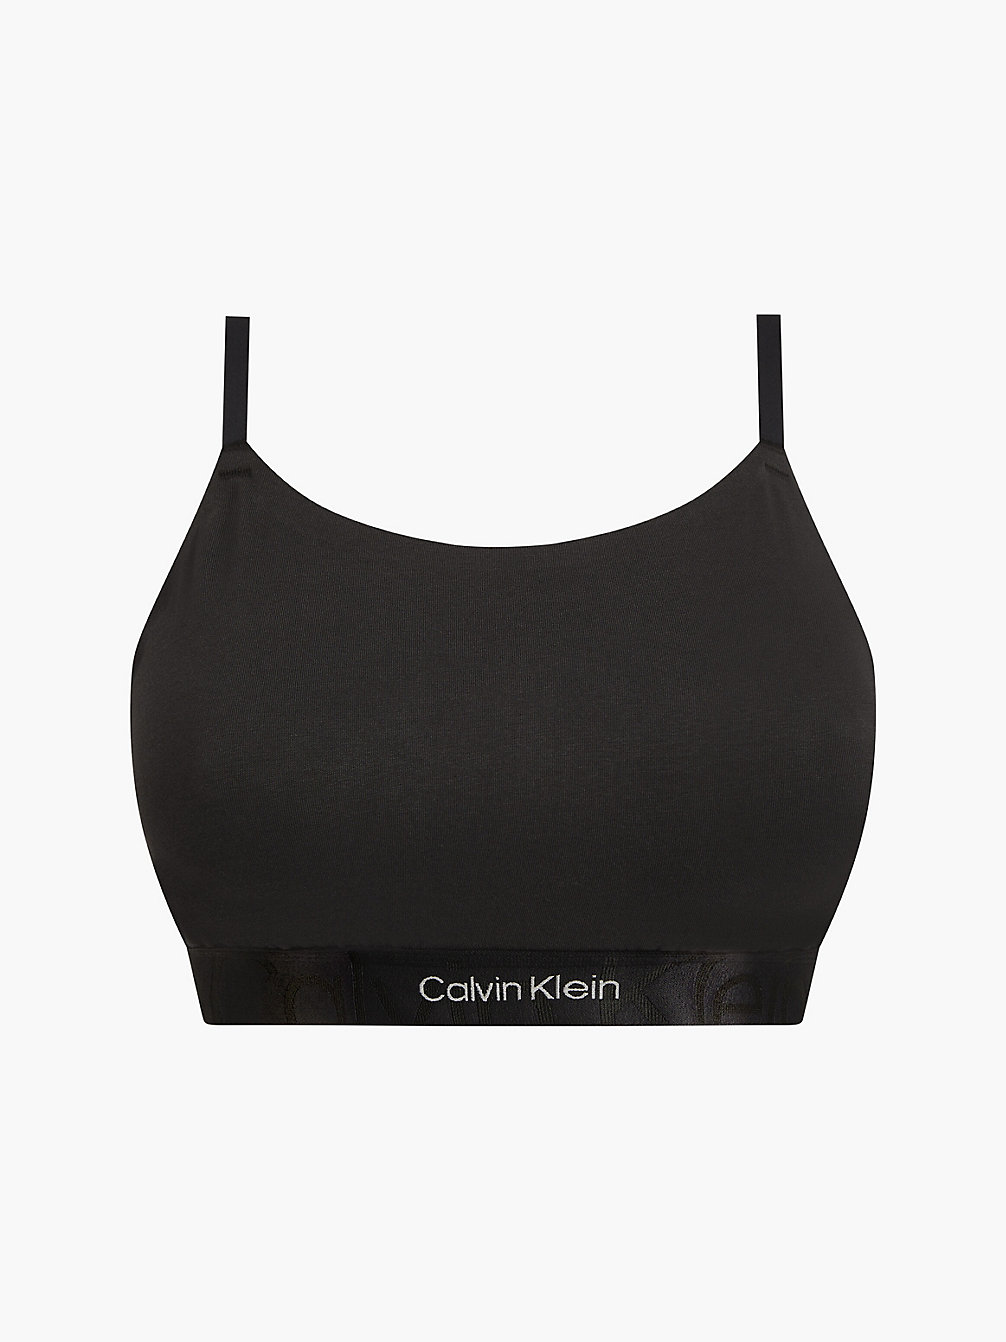 BLACK > Бралетт плюс-сайз - Embossed Icon > undefined Женщины - Calvin Klein